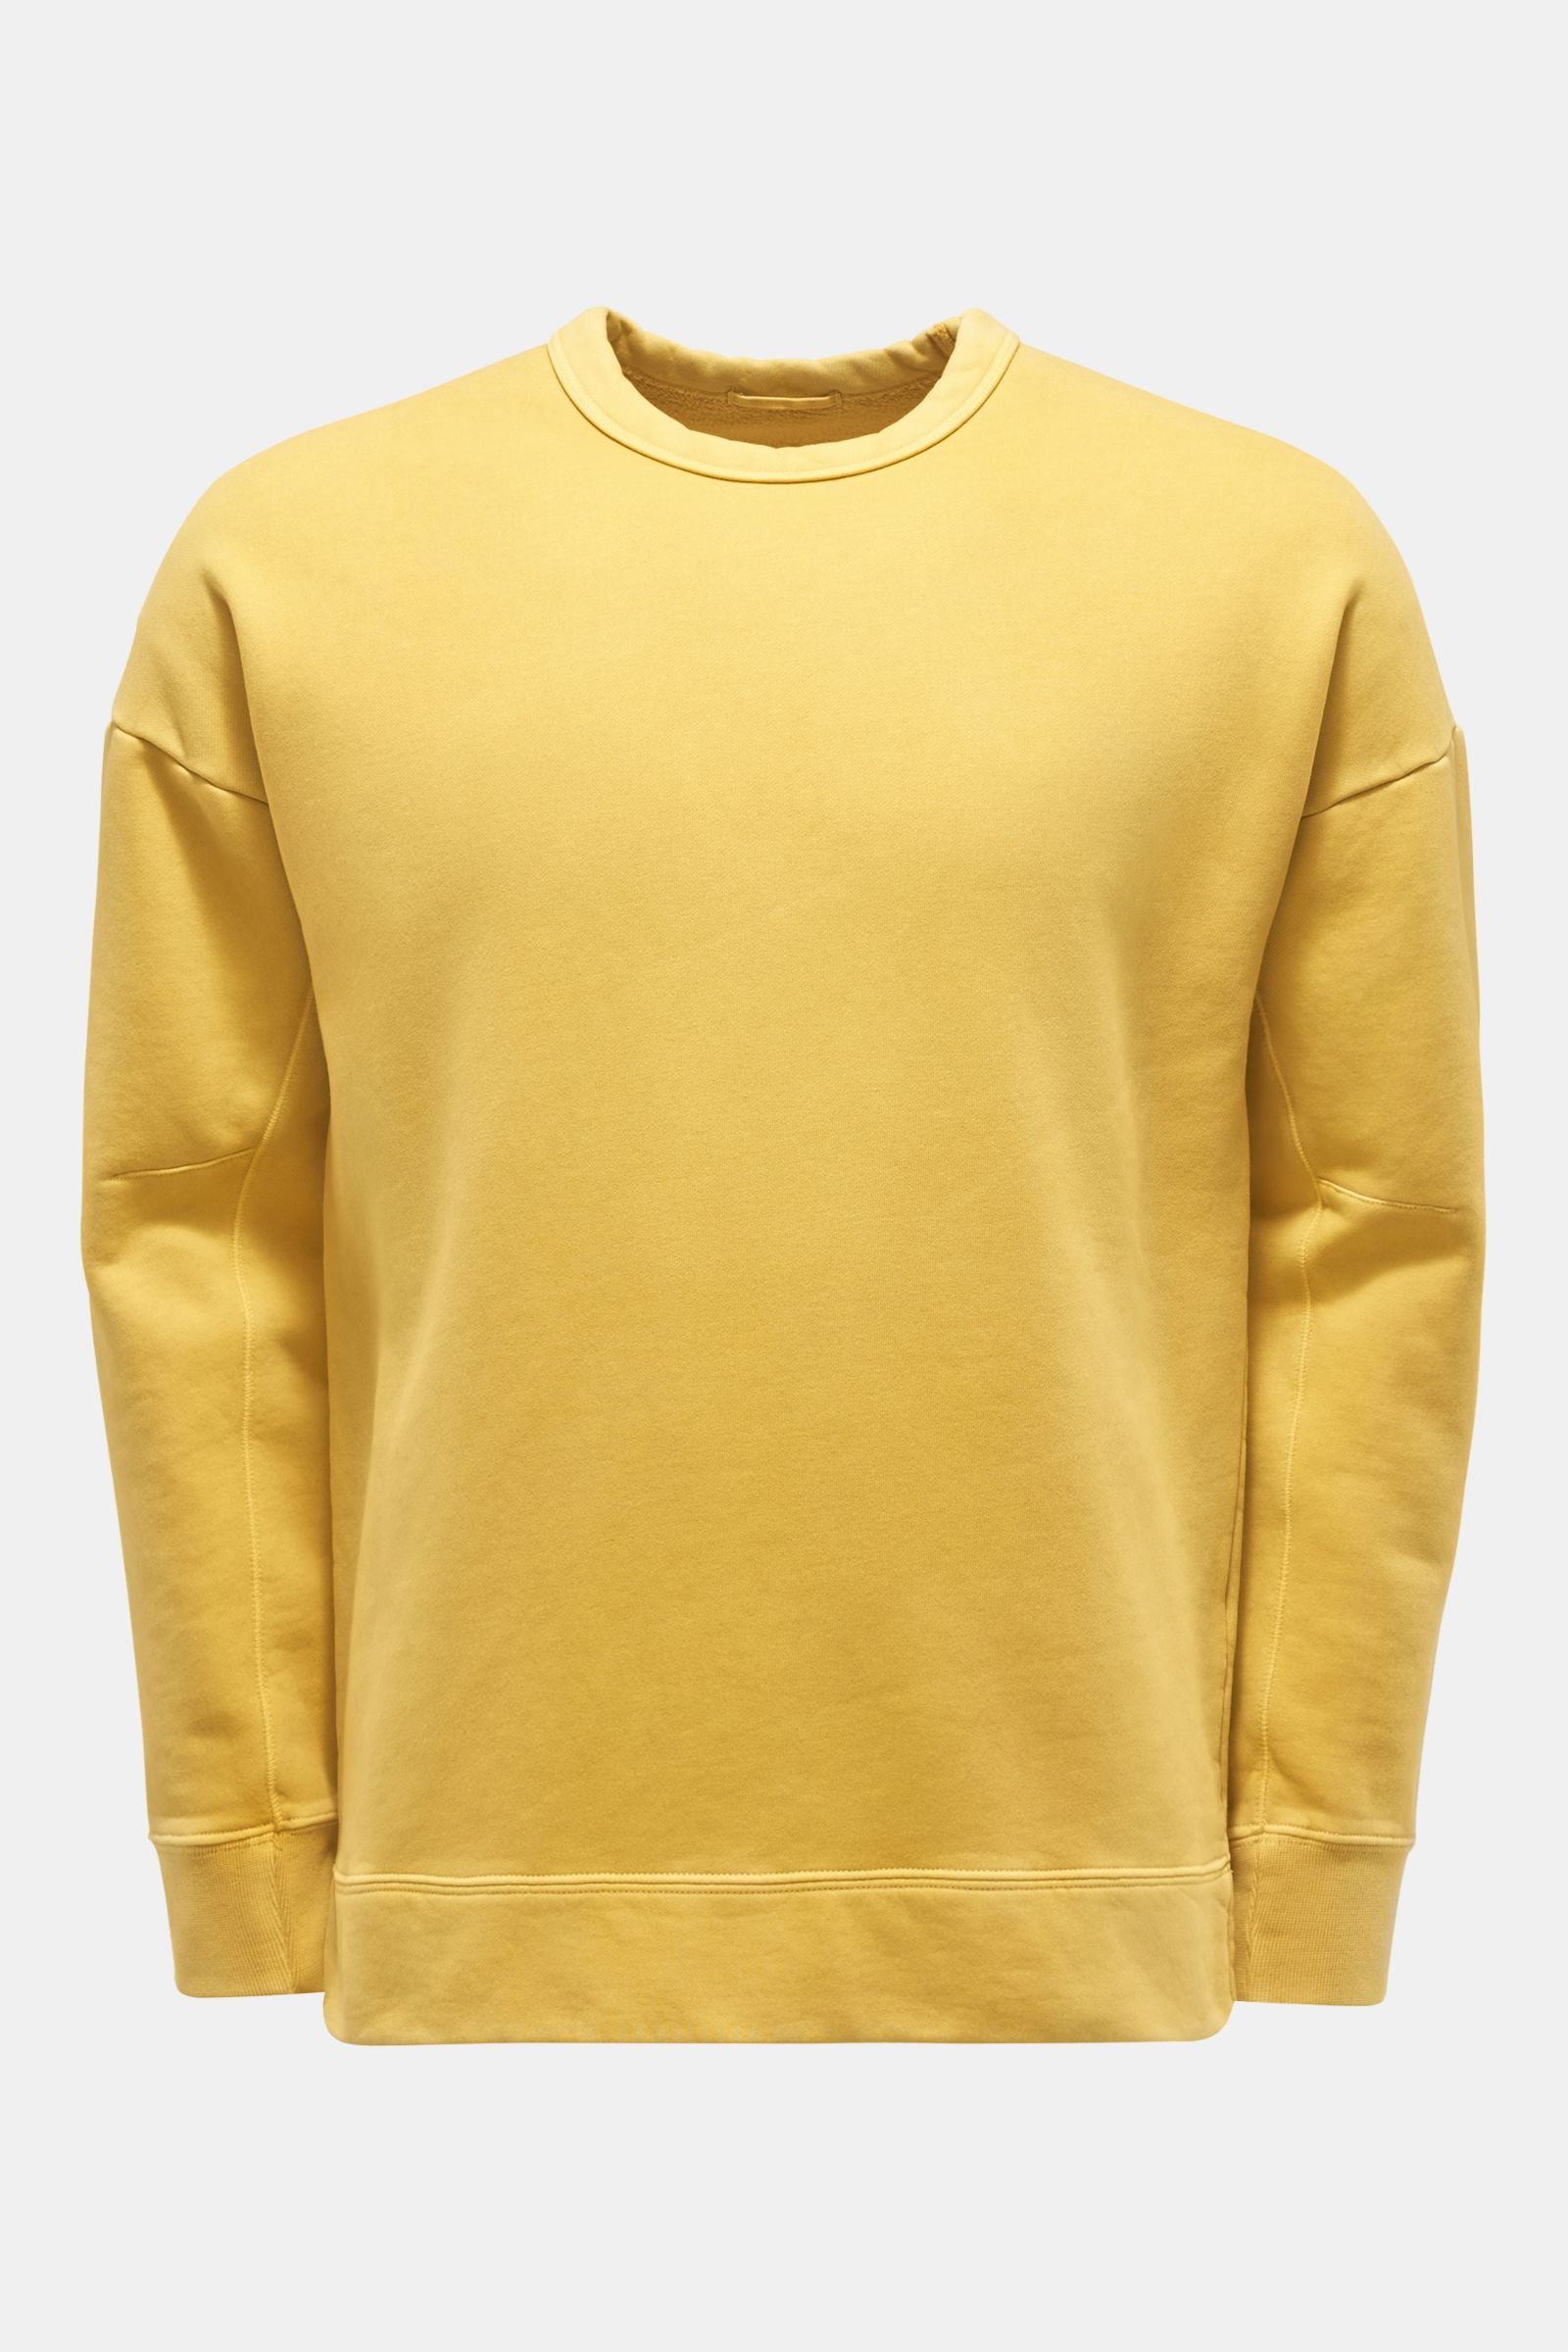 Crew neck sweatshirt yellow